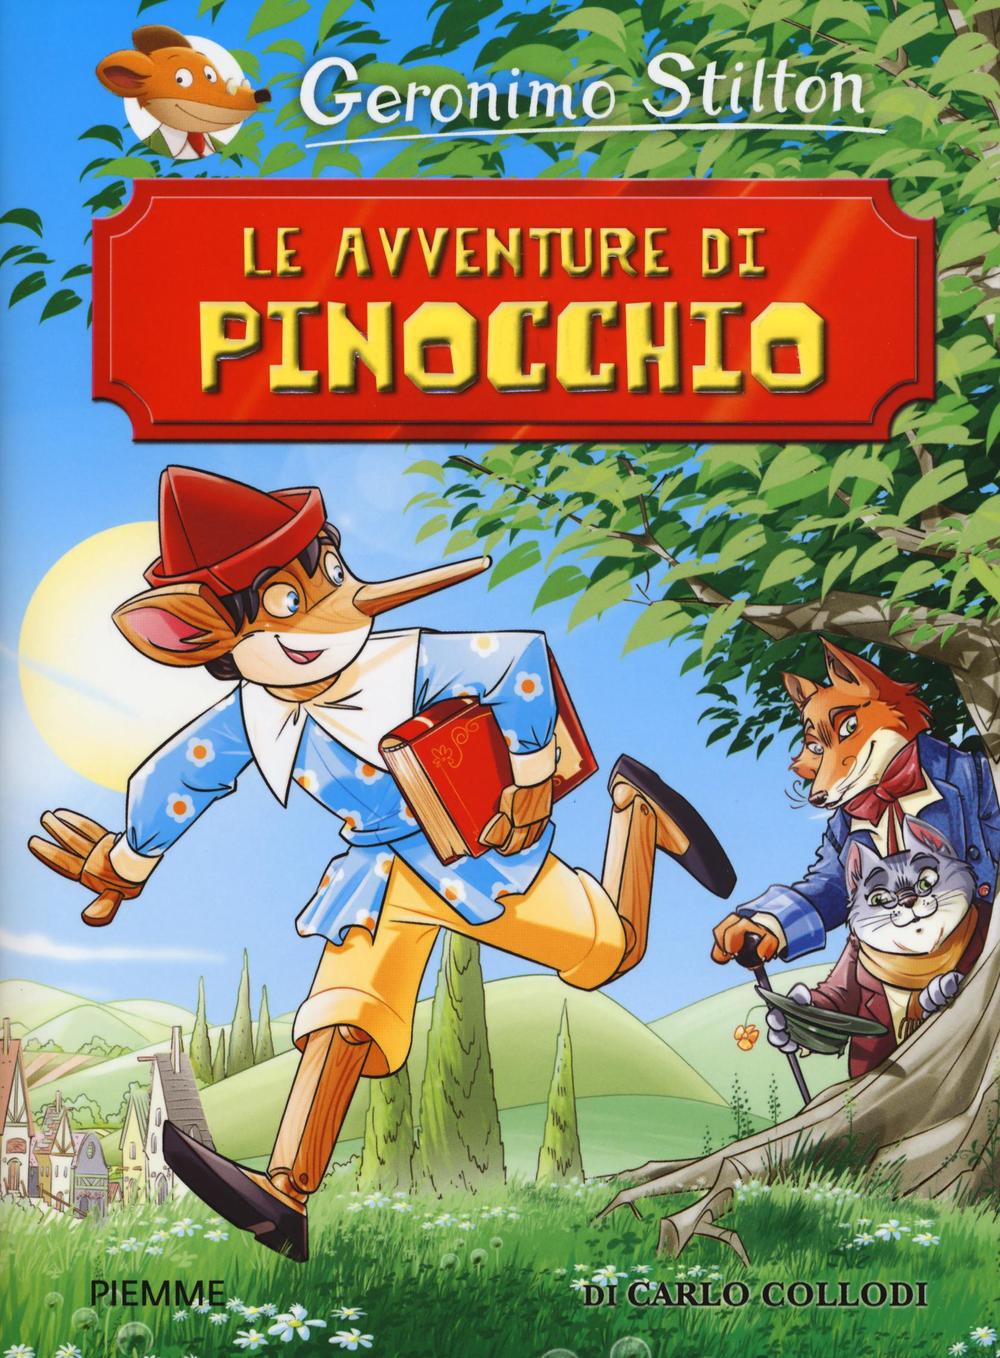 Le avventure di Pinocchio di Carlo Collodi.